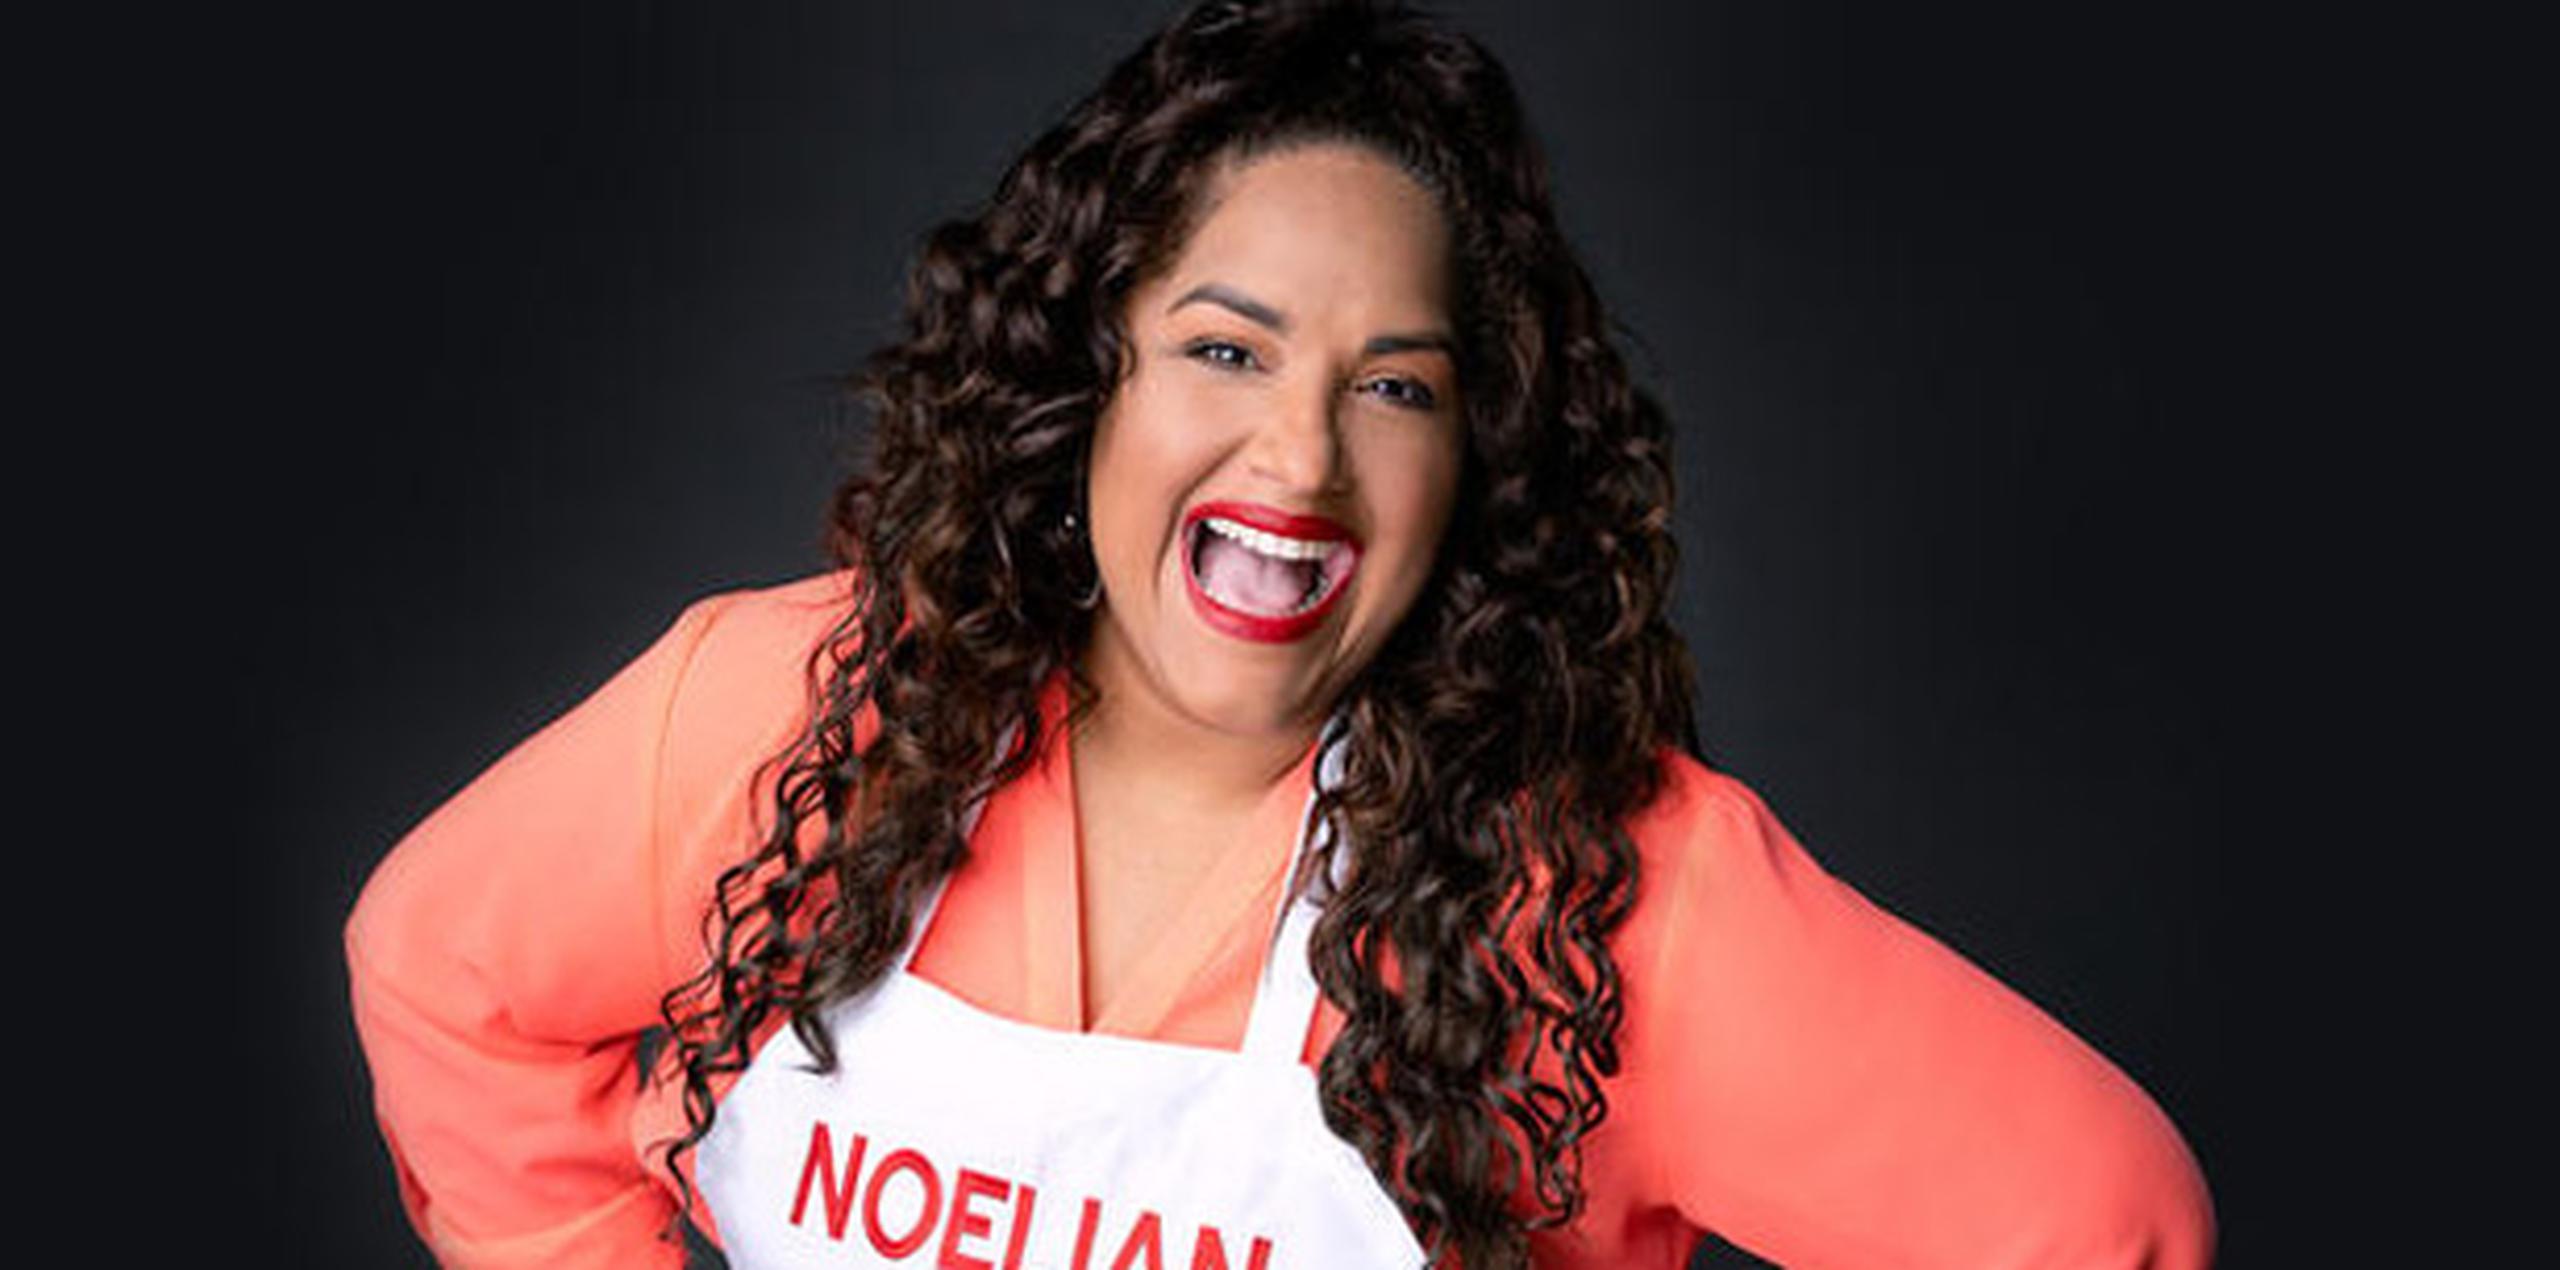 Noelian Ortiz, del #EquipoClaudia, es la única boricua que compite en MasterChef Latino. (Suministrada)